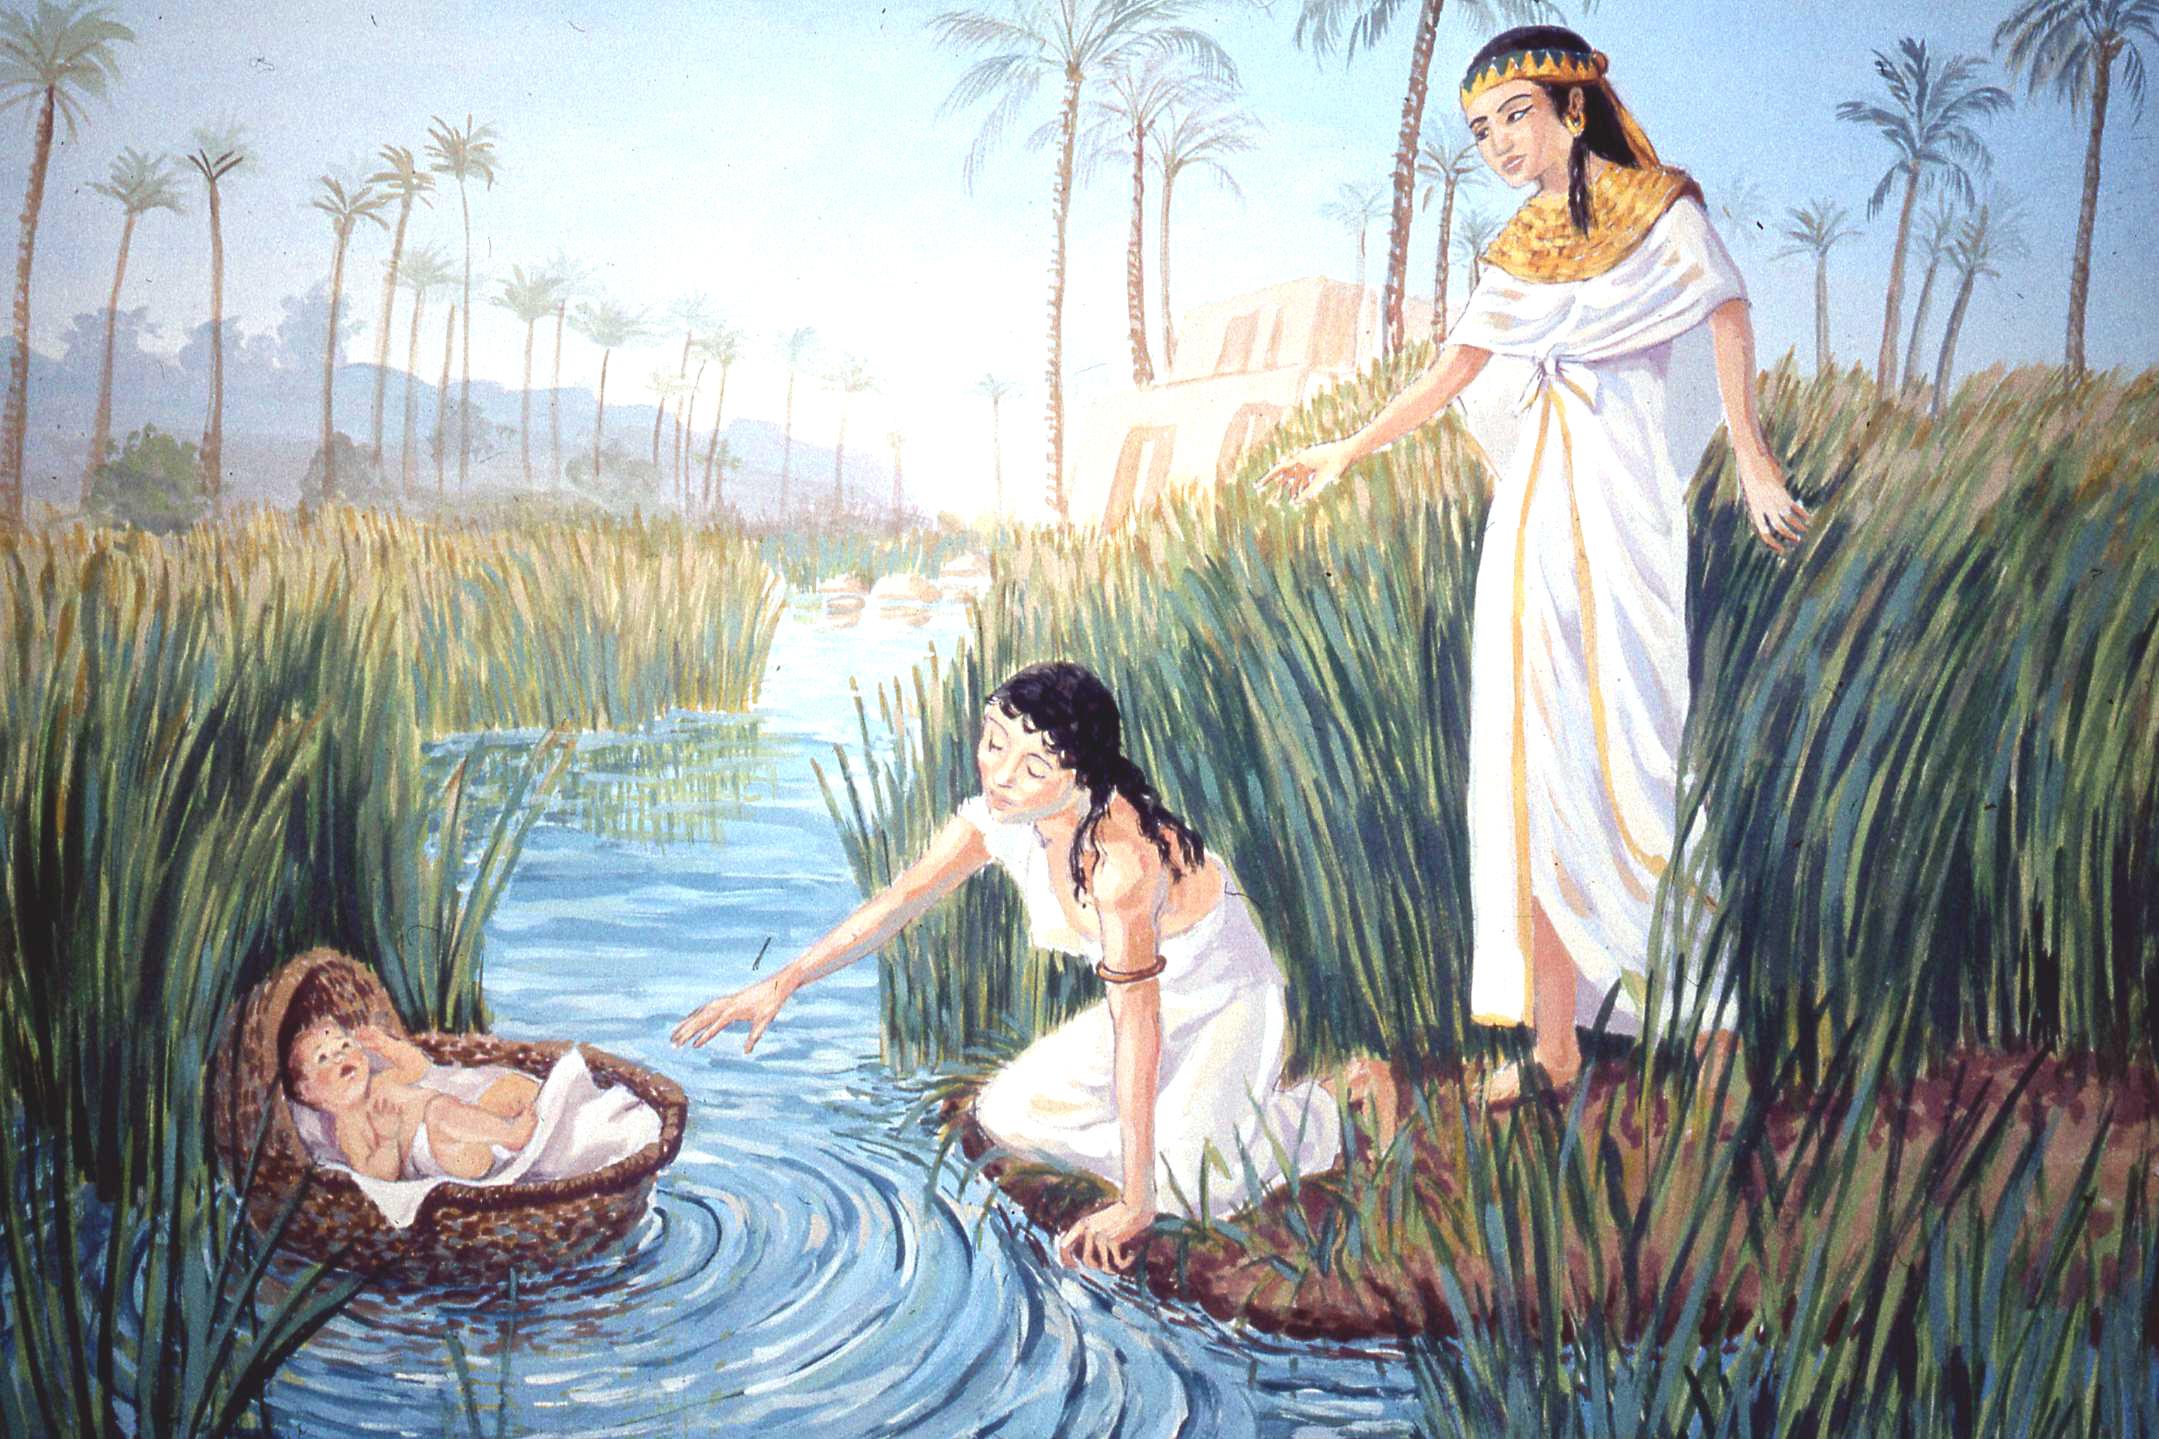 Moisés nació en los tiempos de esclavitud de los nazarenos en Egipto. 